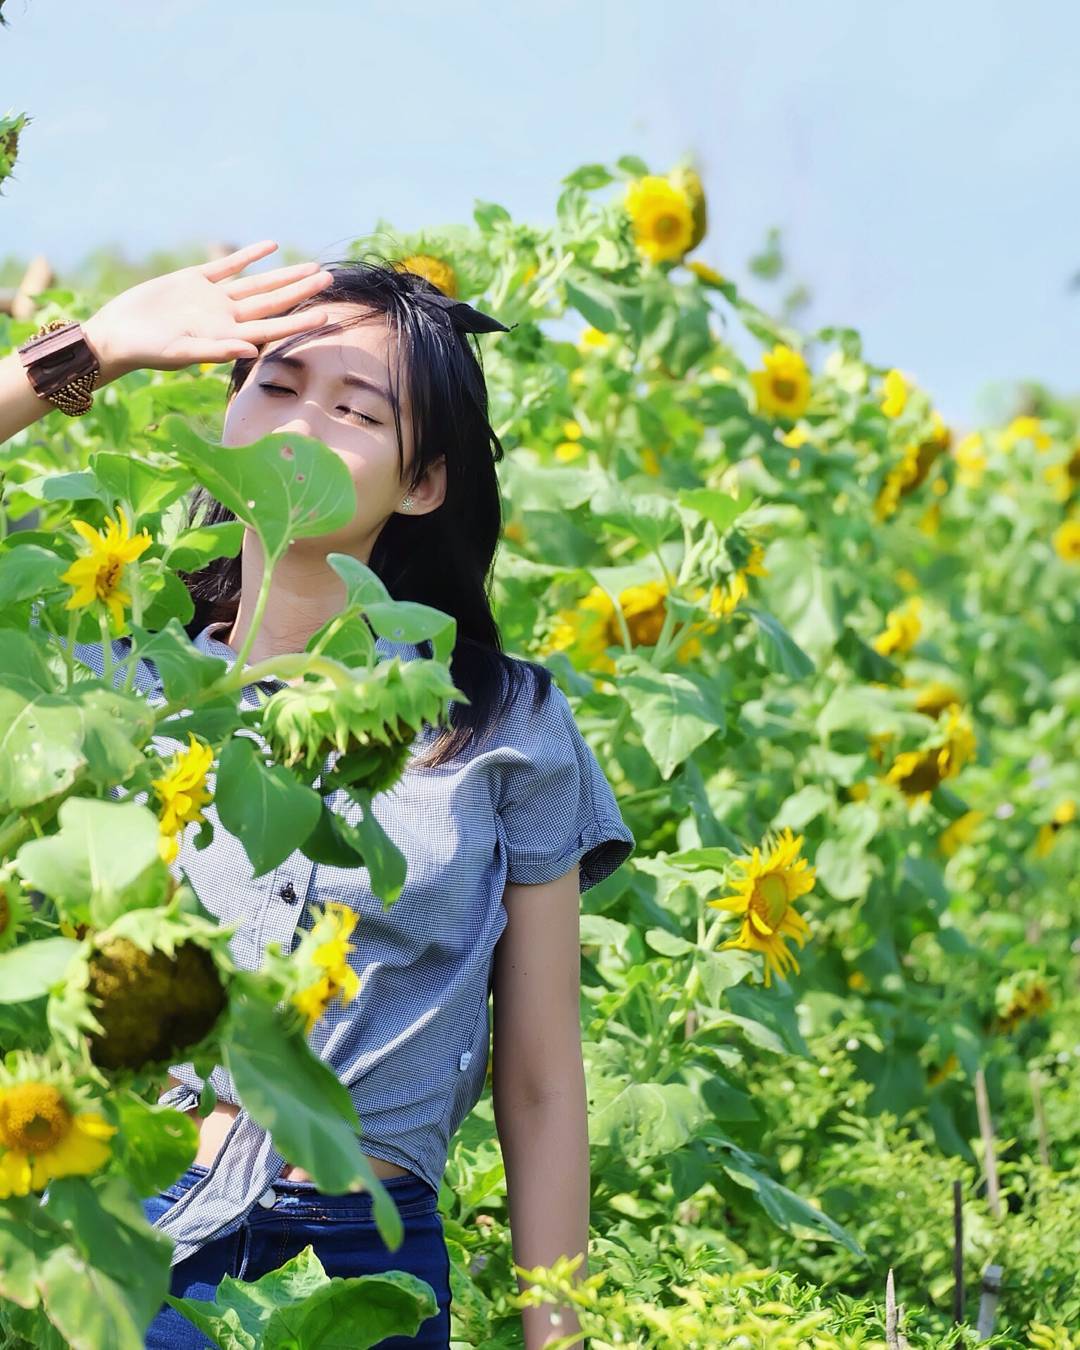 kebun bunga matahari di indonesia